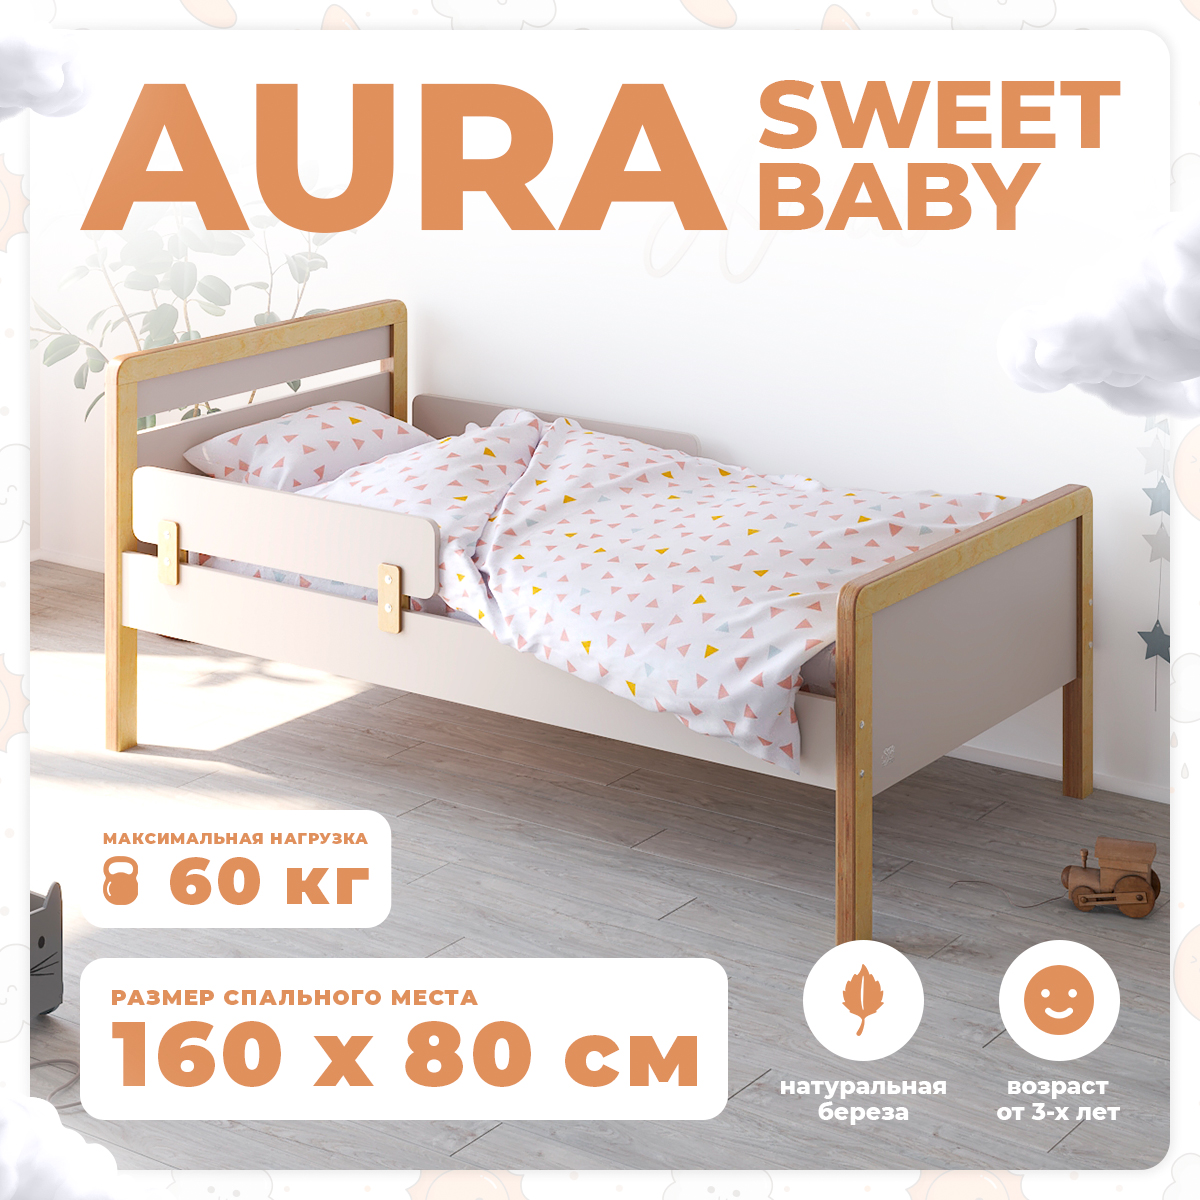 Кровать подростковая Sweet Baby Aura NaturaleСachemire